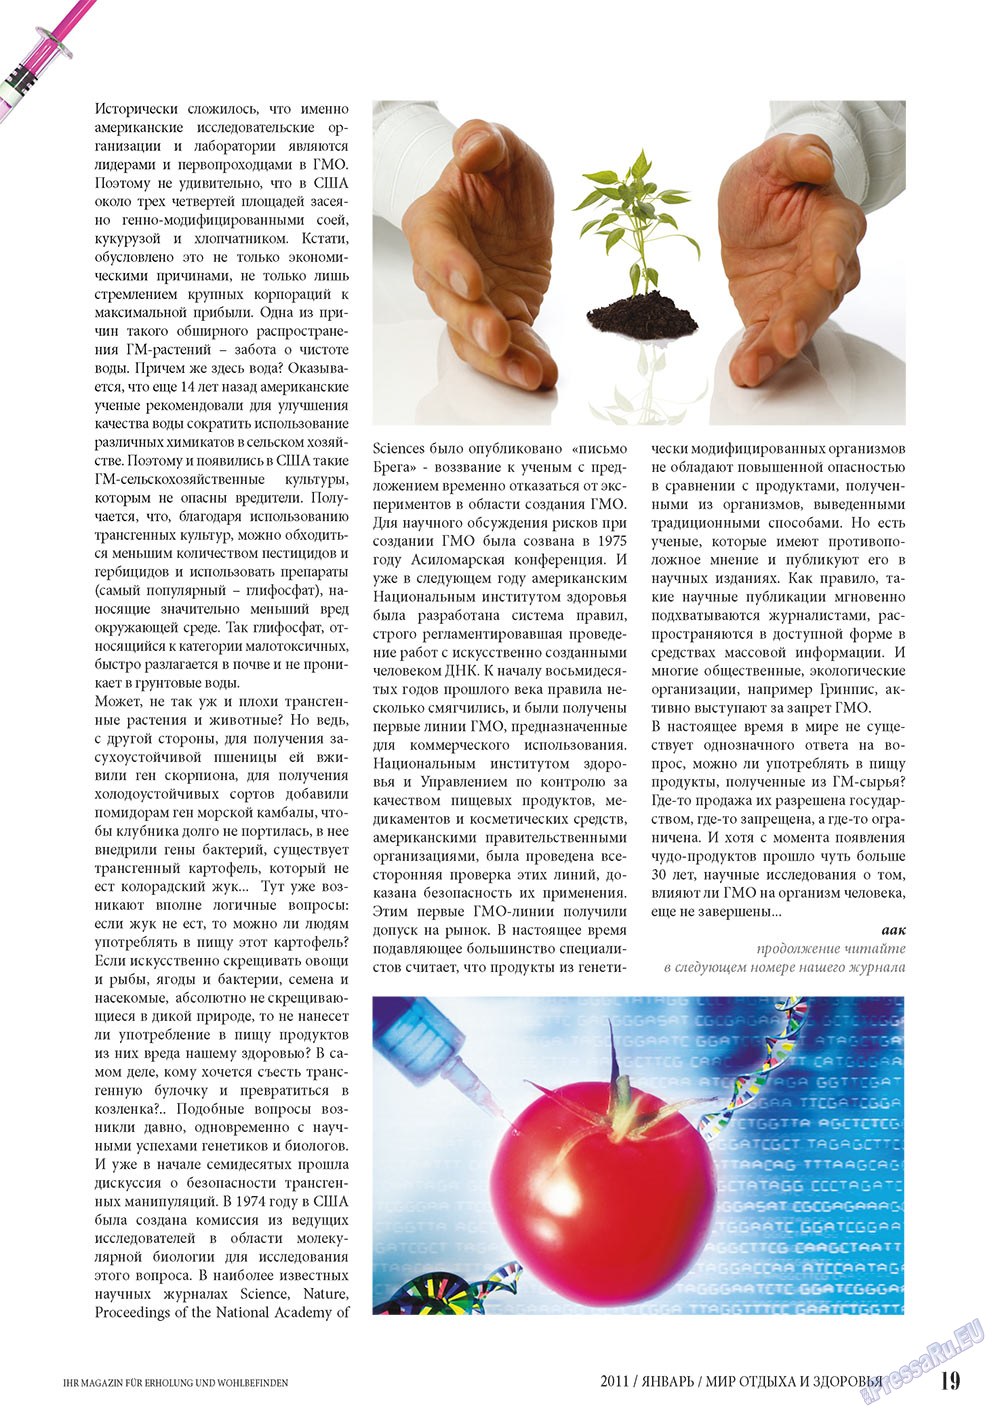 Мир отдыха и здоровья (журнал). 2011 год, номер 1, стр. 19